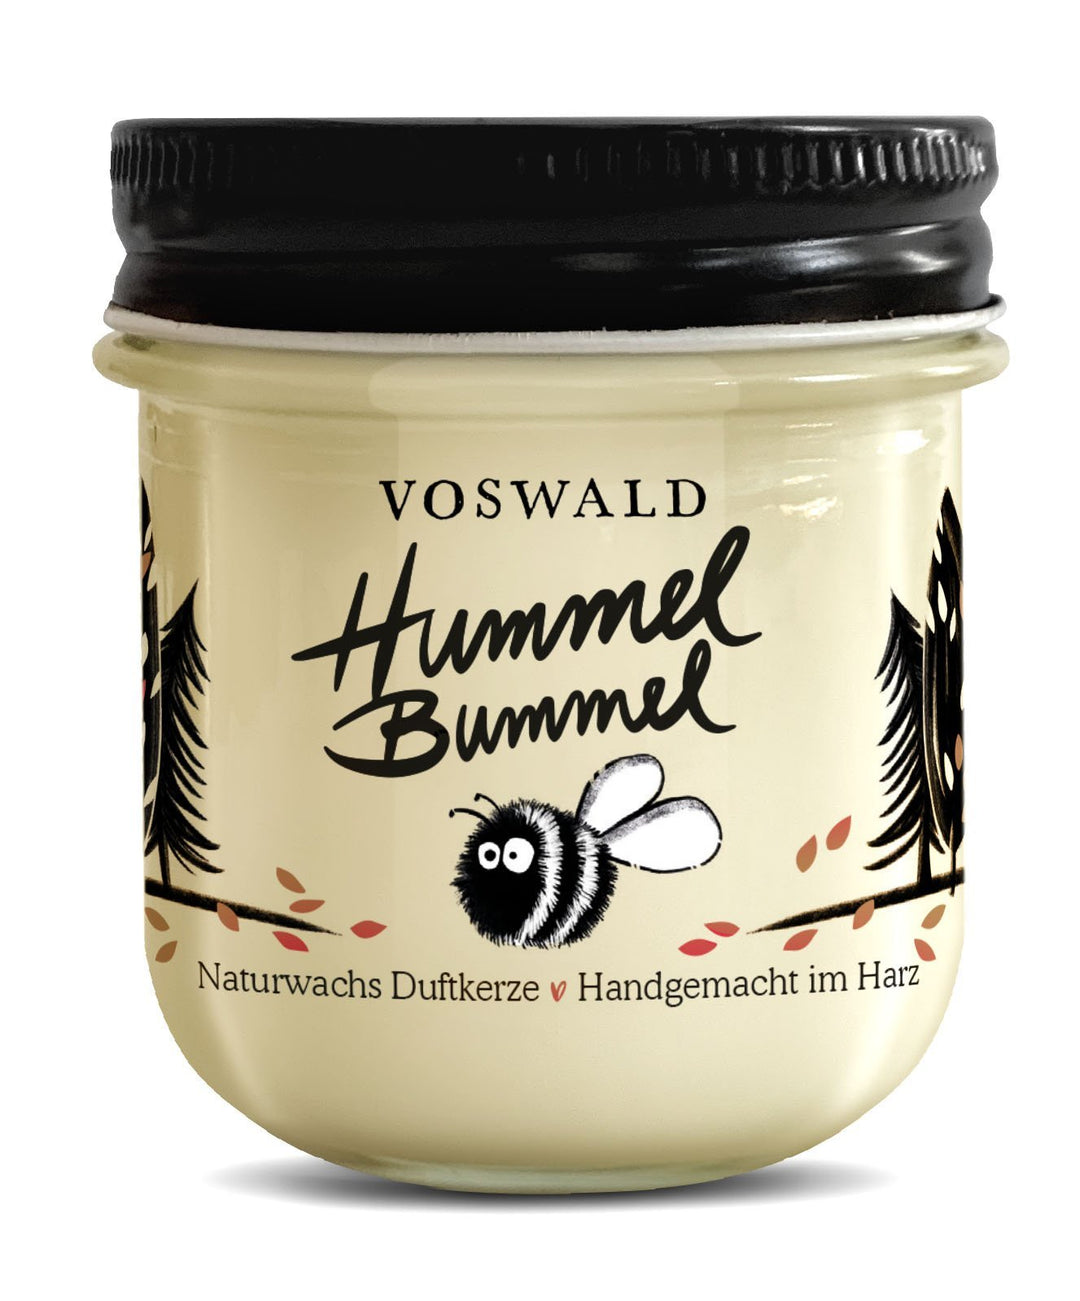 Hummel Bummel – Duftkerze - Voswald